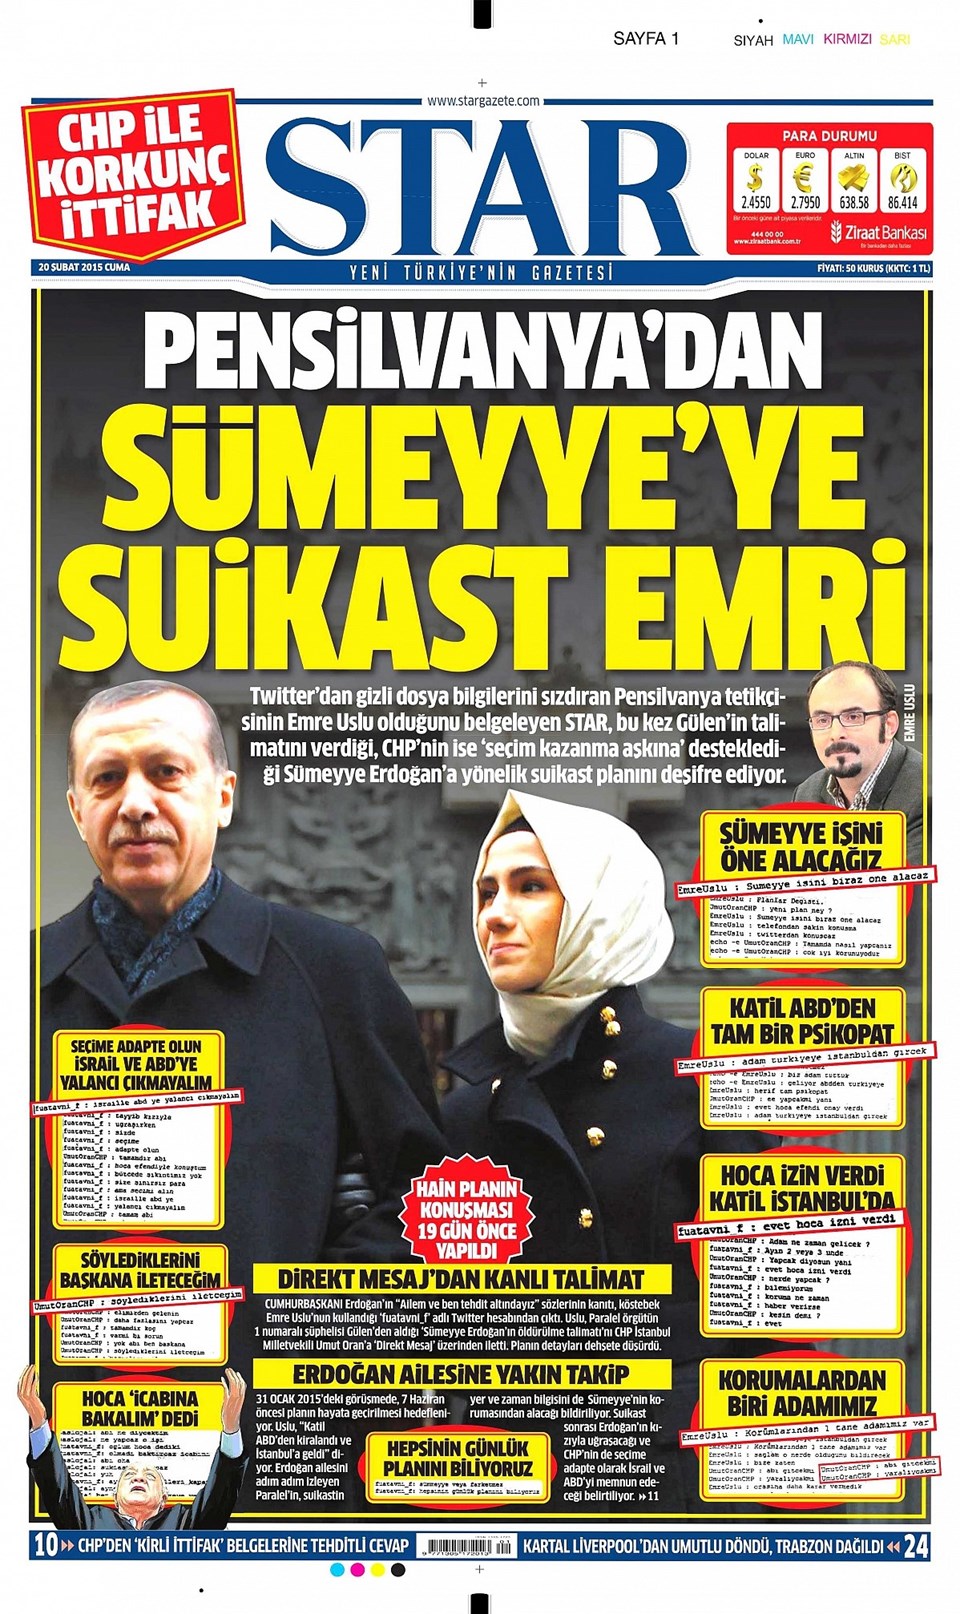 Sümeyye Erdoğan'a suikast iddiasına soruşturma - 2